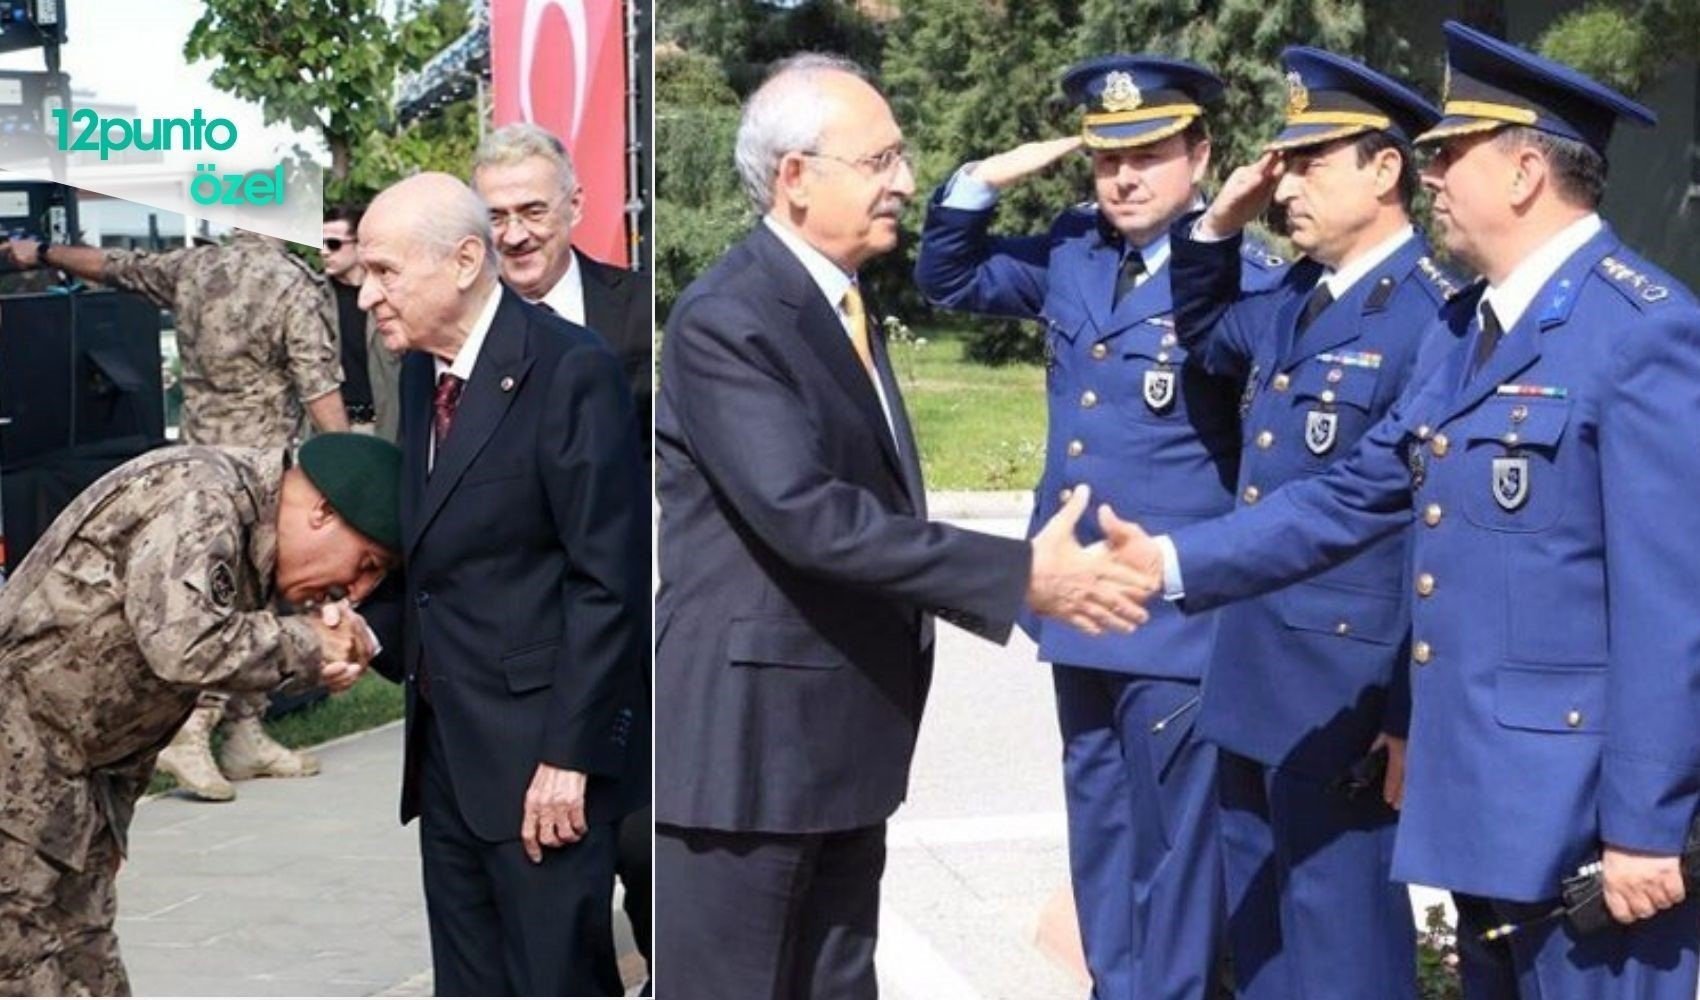 El öpmenin cezası olacak mı? Bahçeli'nin fotoğrafı akıllara Kılıçdaroğlu'na tören yapan komutanı getirdi